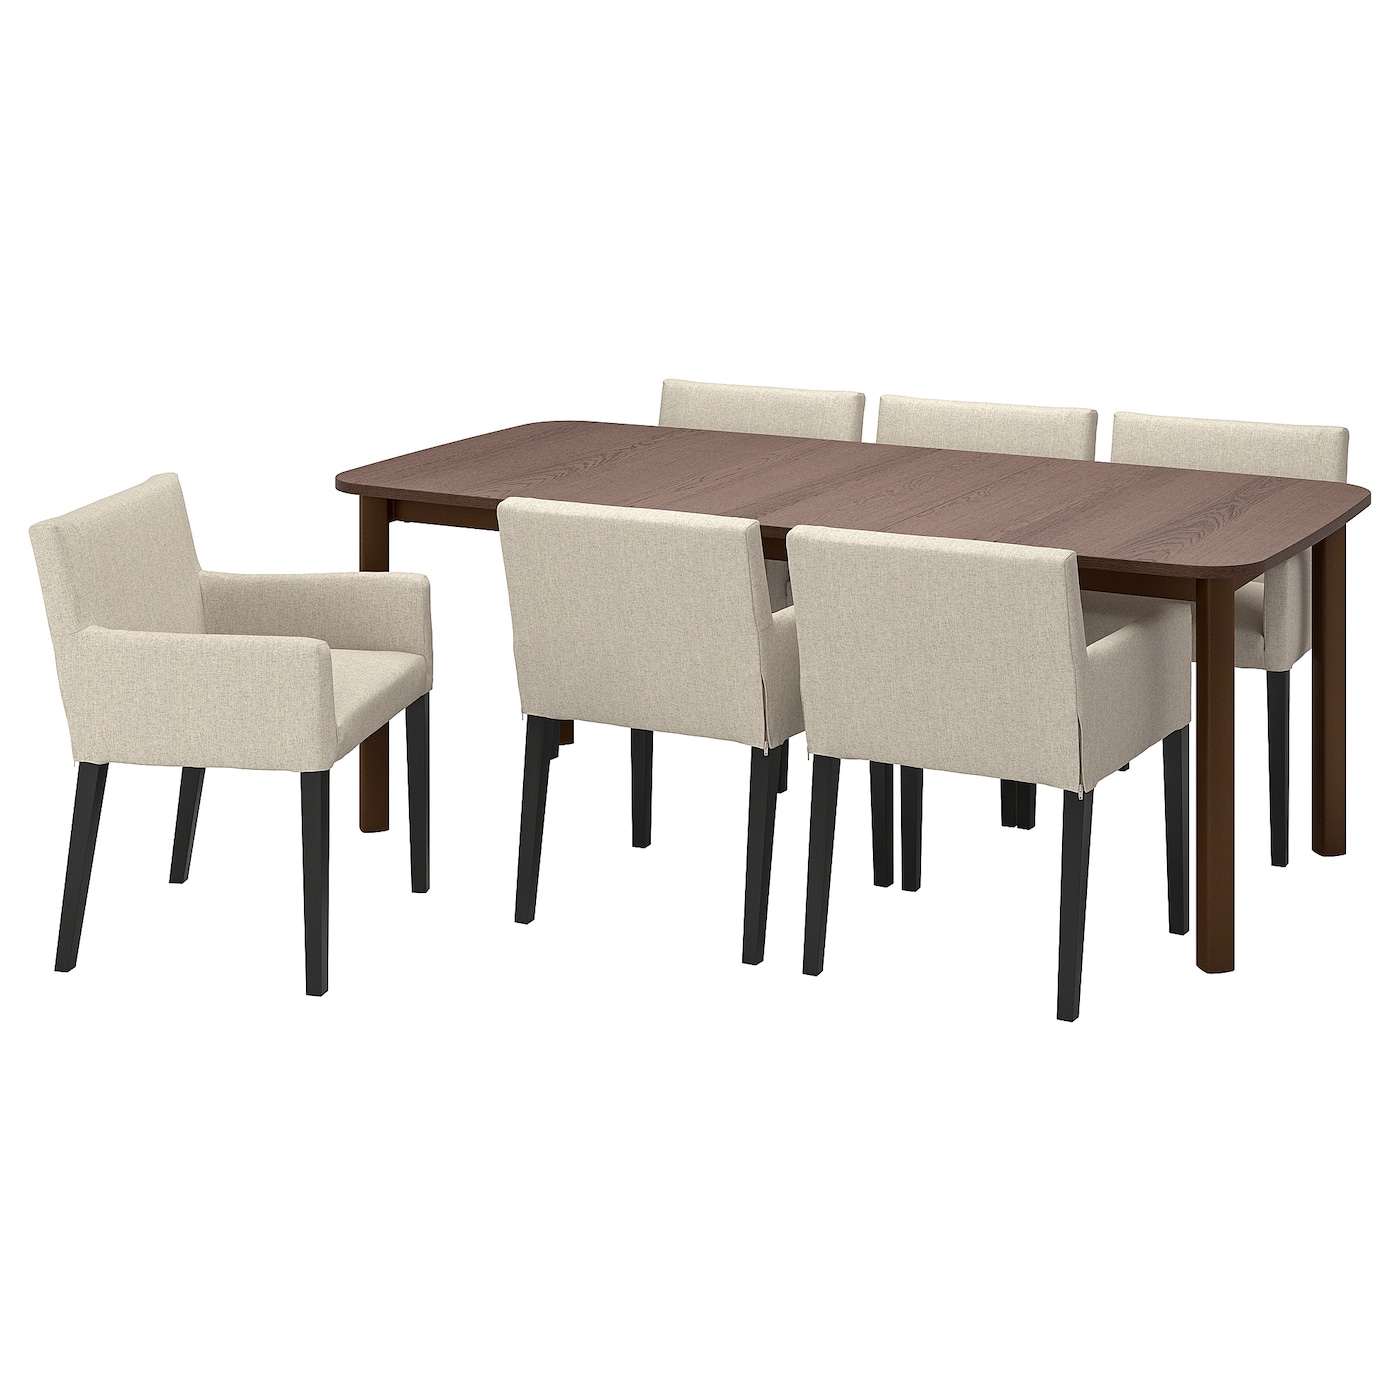 Стол и 6 стульев - STRANDTORP / MÅRENÄS IKEA/СТРАНДТОРП/МАРЕНЭС ИКЕА, 205х95х75 см, коричневый/белый